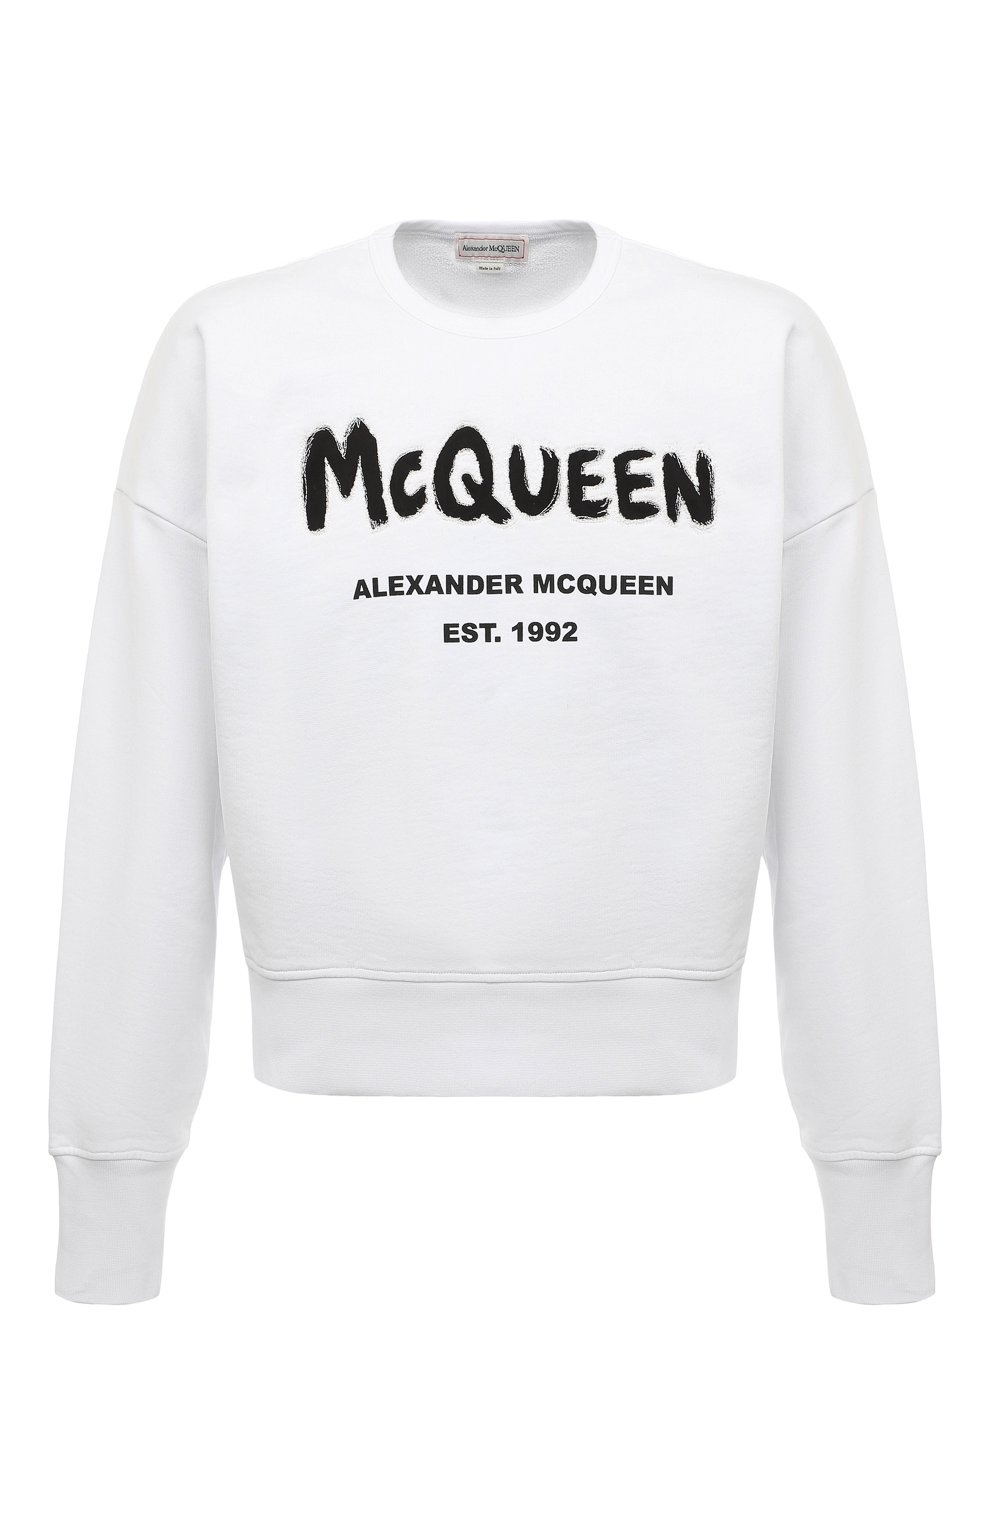 Хлопковый свитшот Alexander McQueen белого цвета